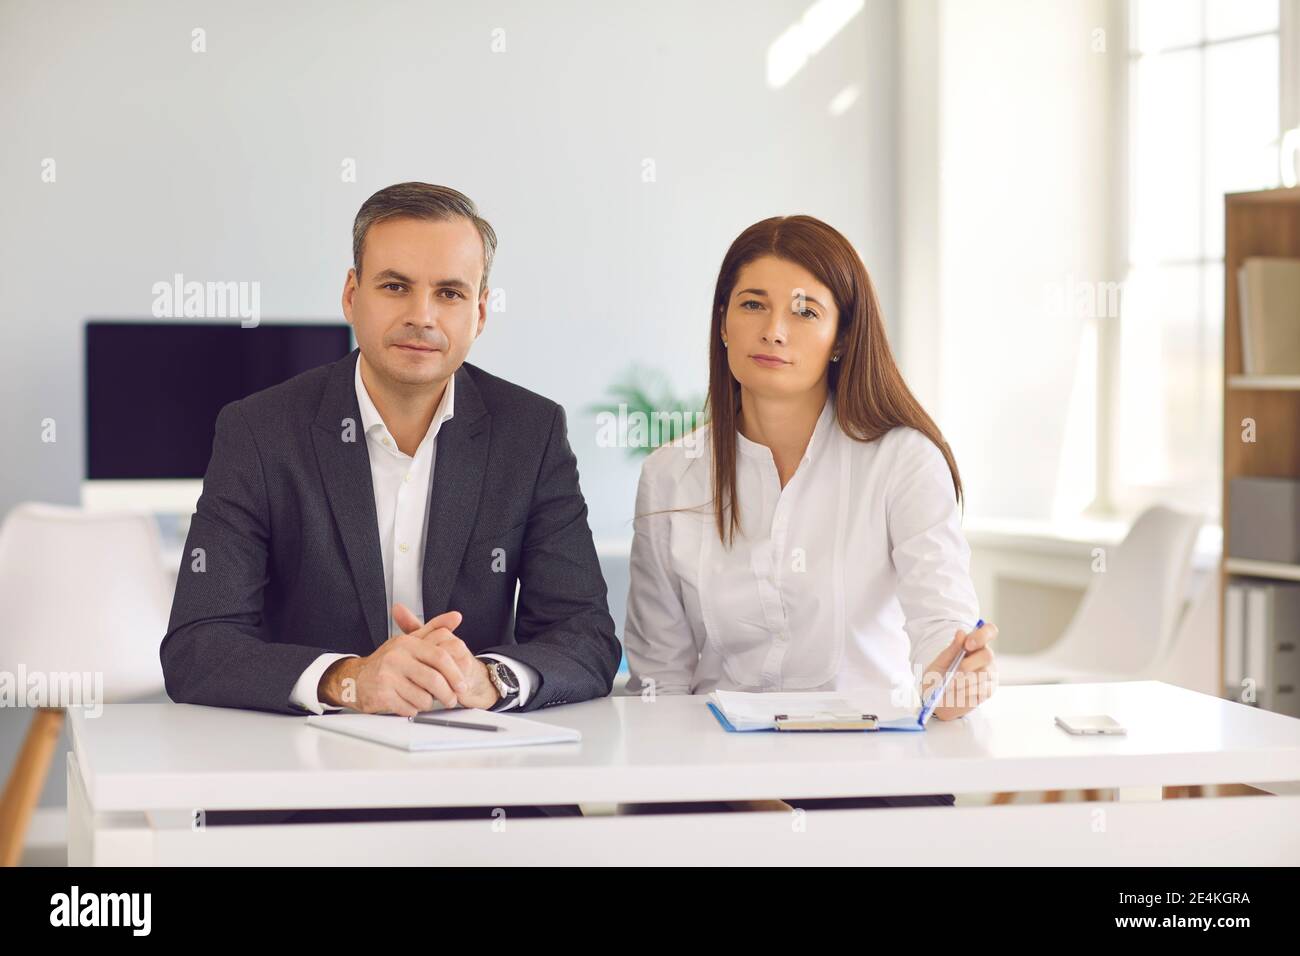 Geschäftsleute, die am Schreibtisch sitzen und die Kamera betrachten Während eines Arbeitsmeeting oder Interviews Stockfoto